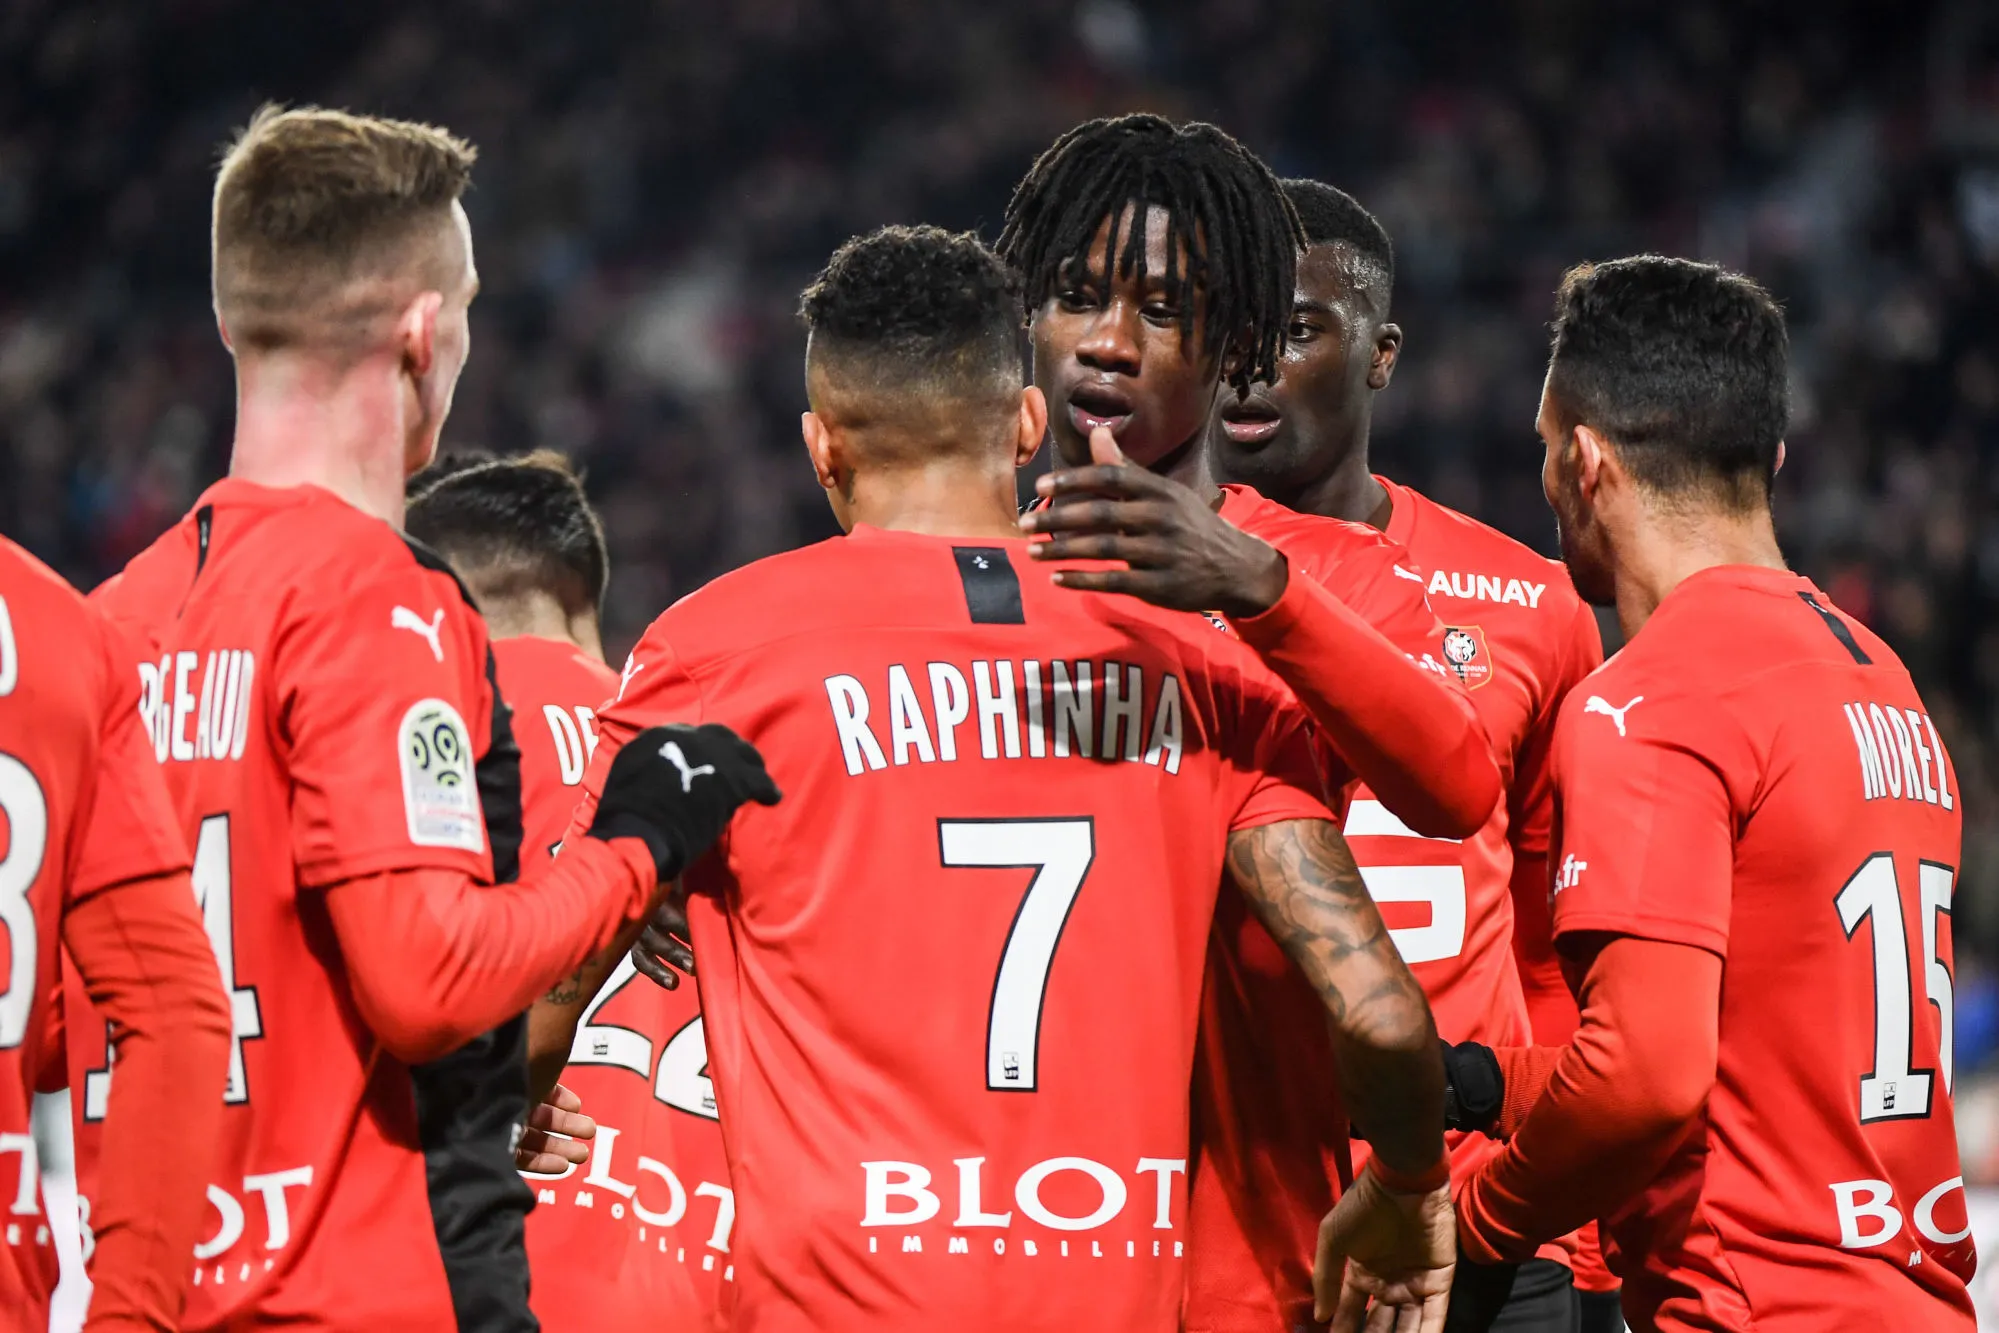 Pronostic Rennes Montpellier : Analyse, cotes et prono du match de Ligue 1